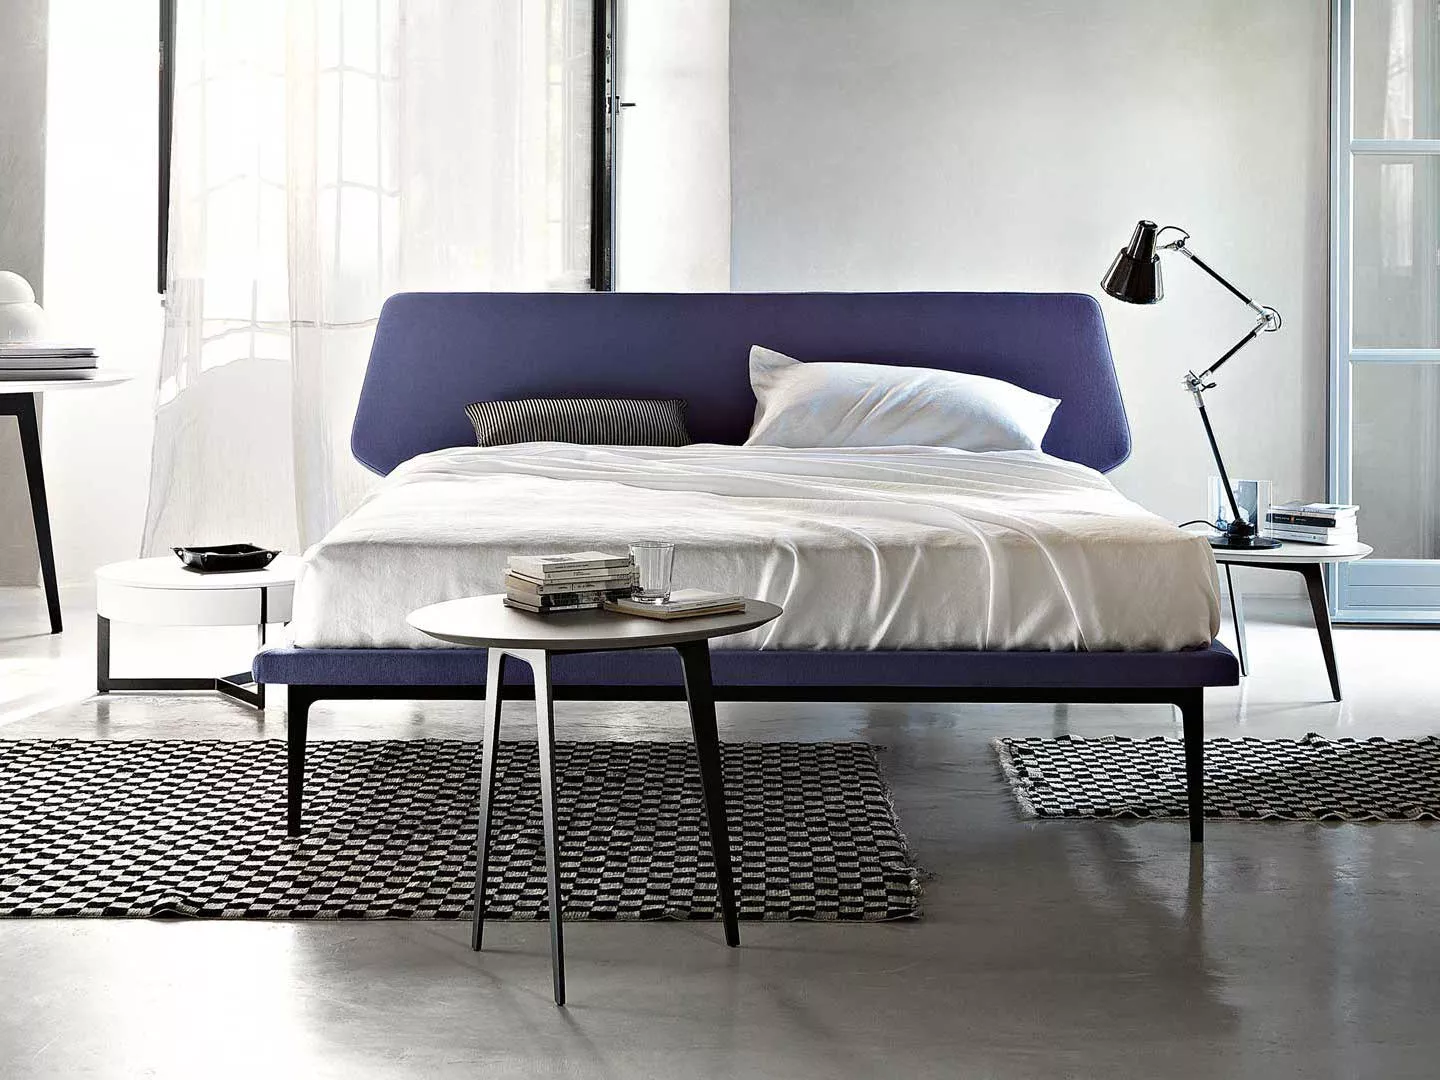 Кровать Dream View Lema  — купить по цене фабрики